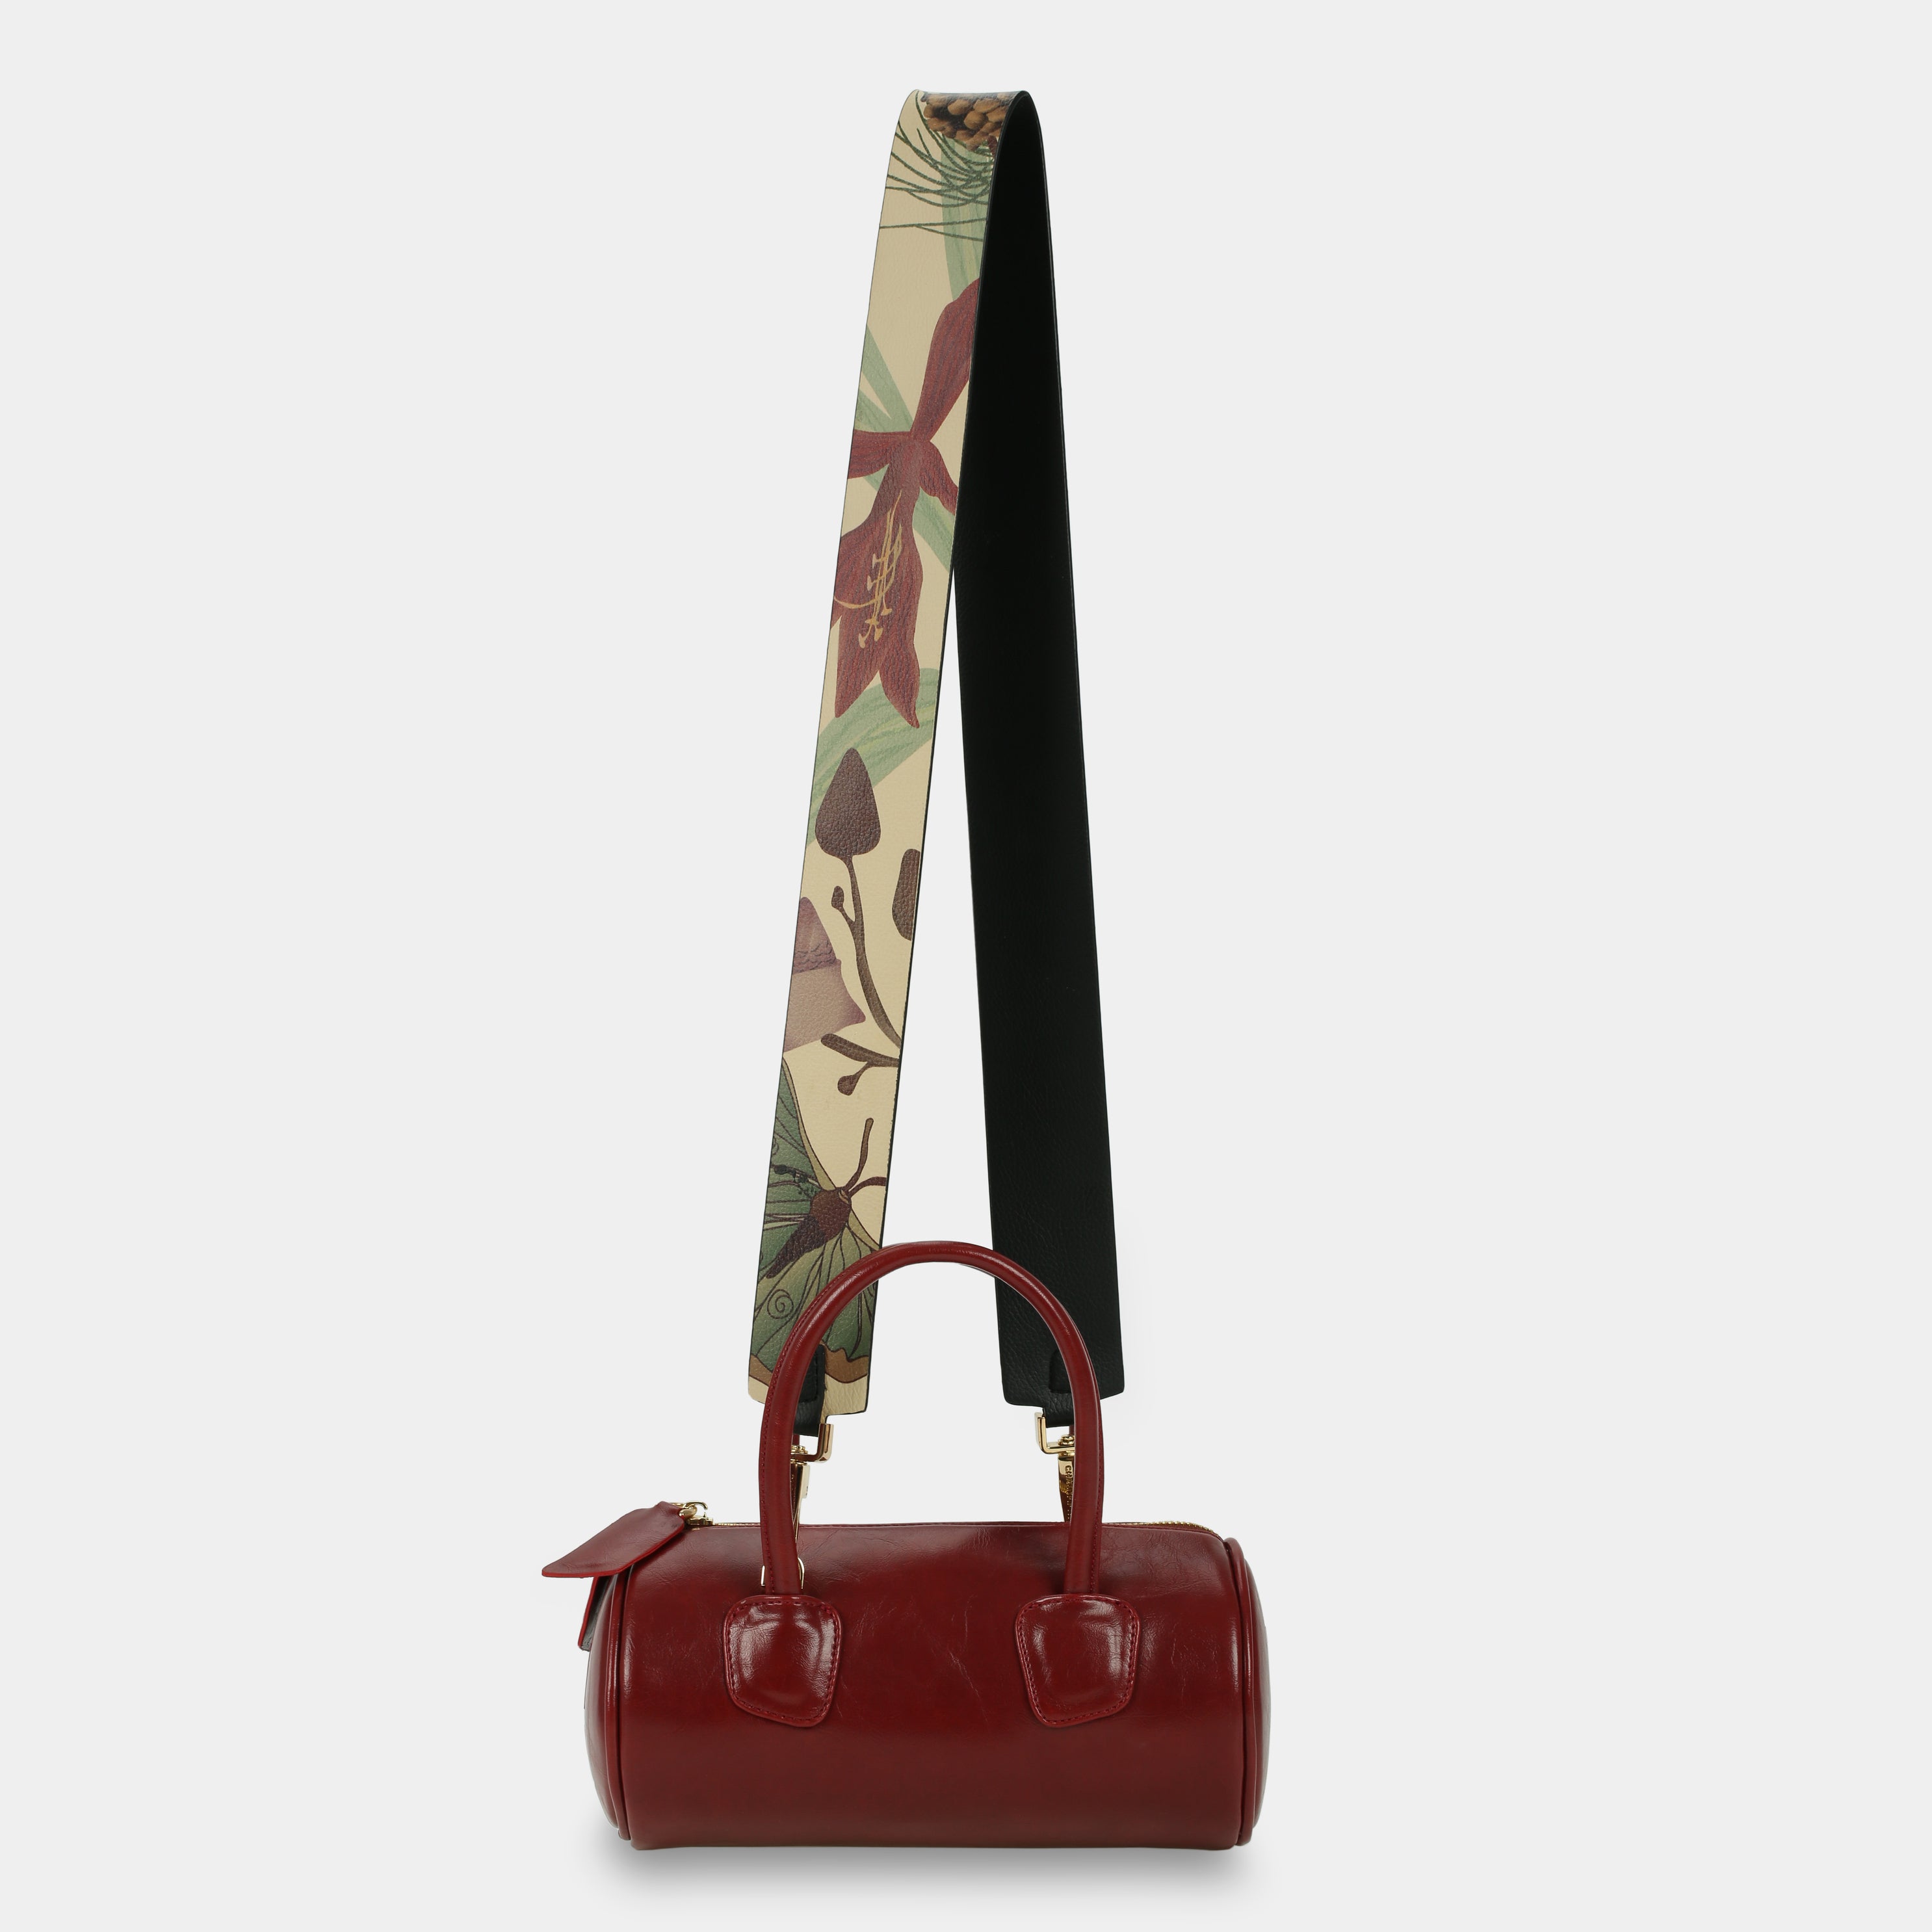 Red ROLL handbag